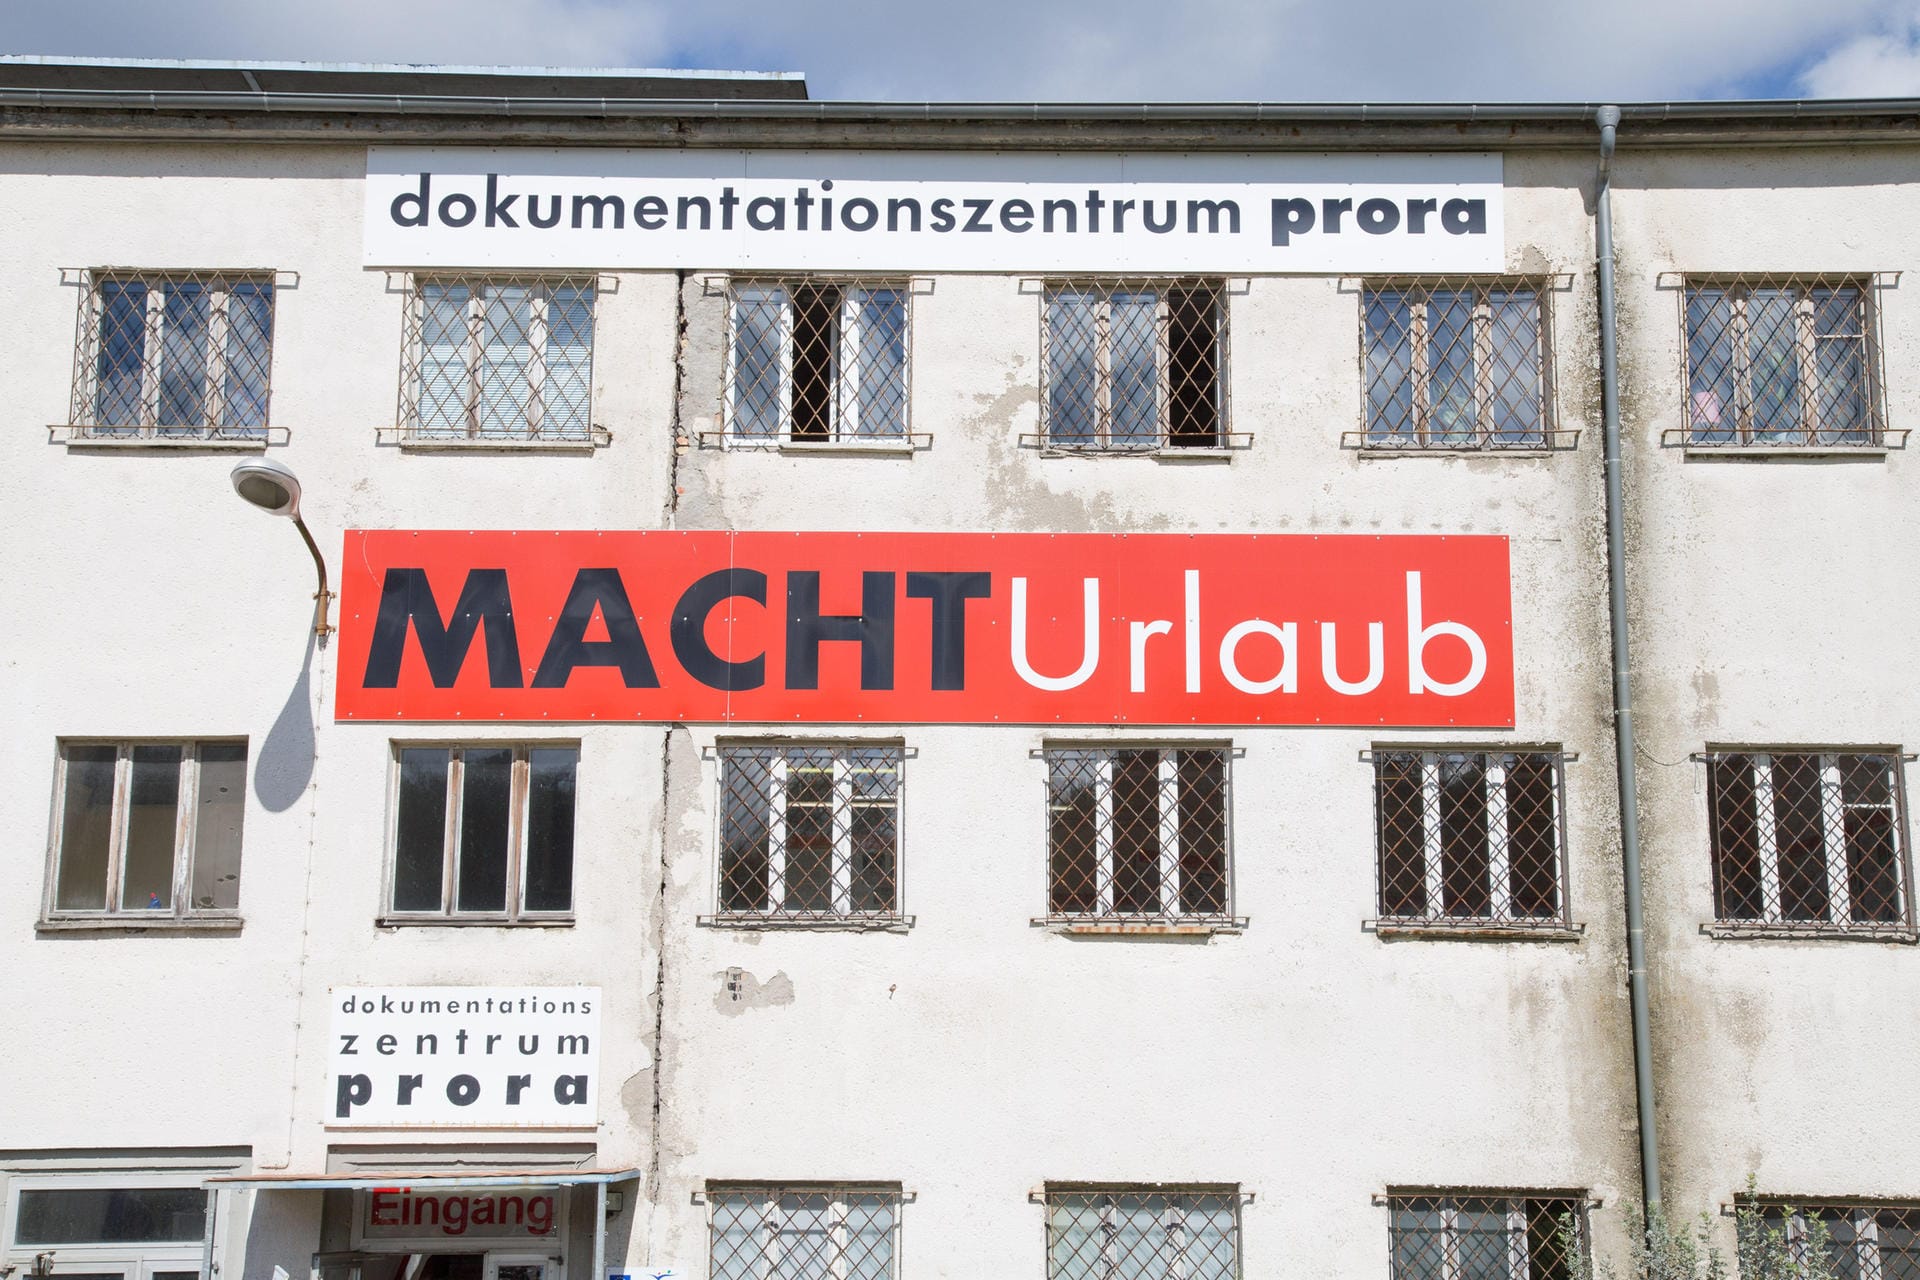 Das Dokumentationszentrum Prora mit der Ausstellung "MachtUrlaub".